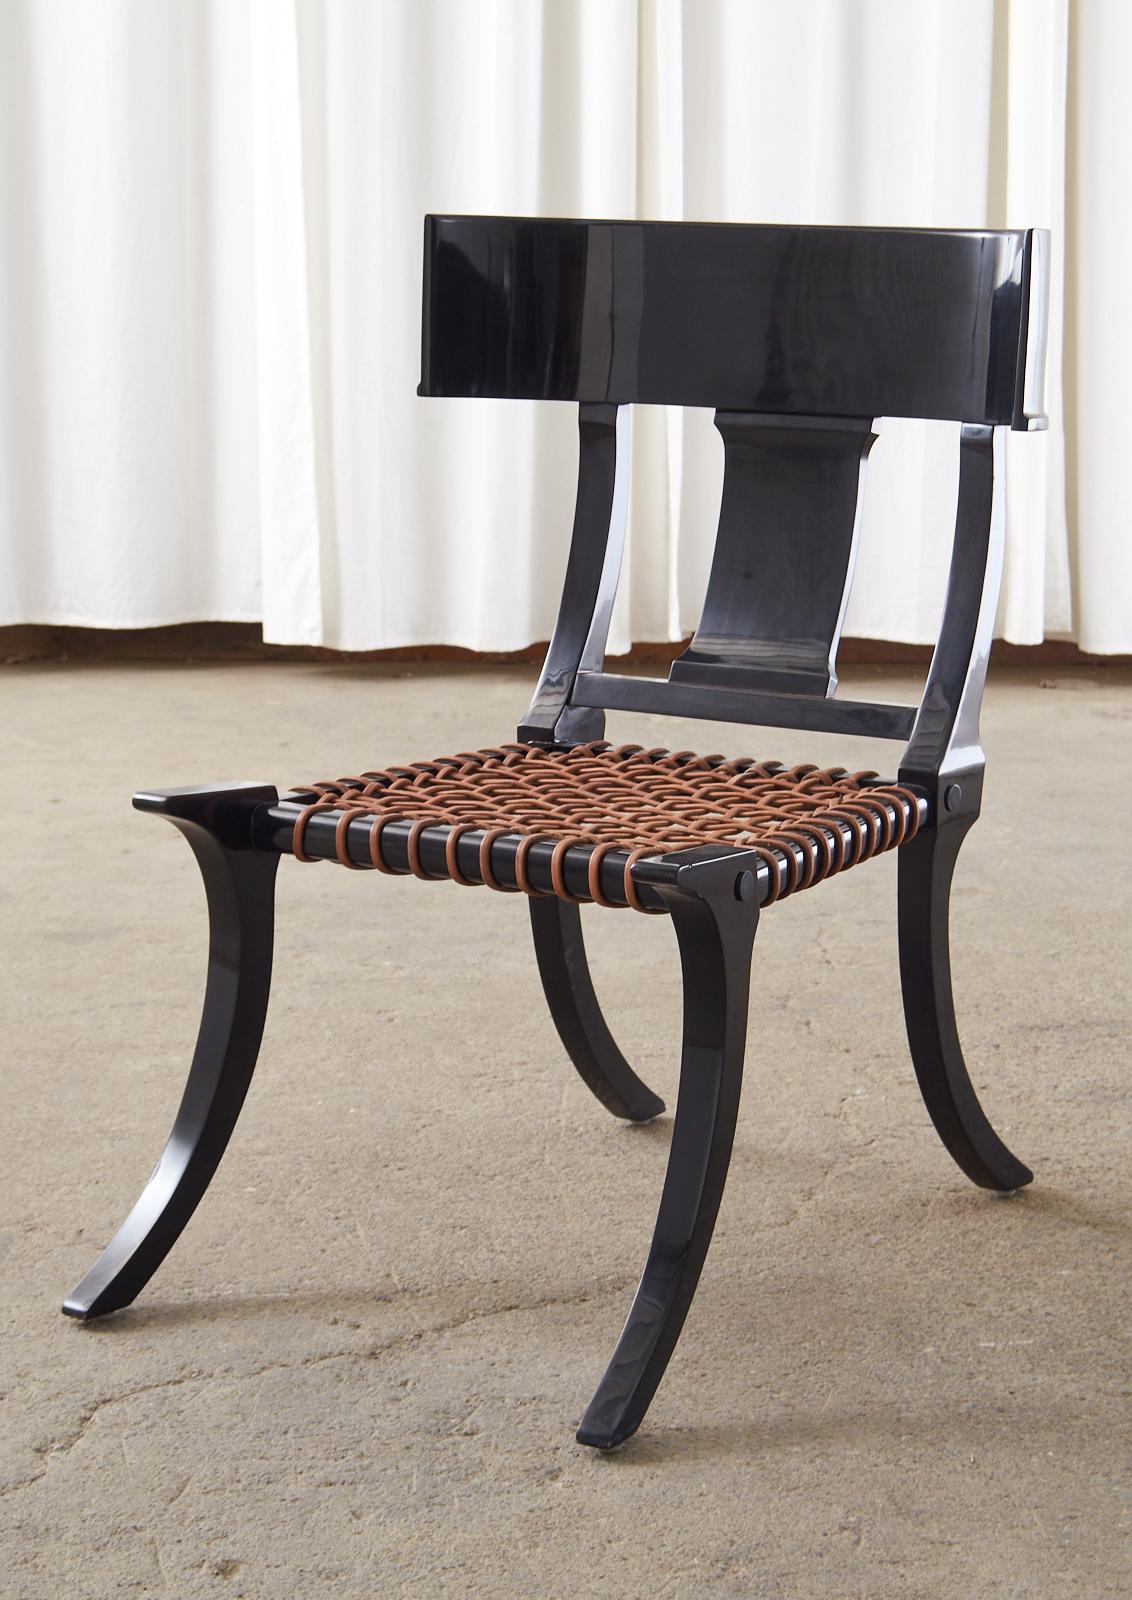 Fantastique paire de grandes chaises Klismos avec une finition laquée noire ébonisée et des sièges à sangles en cuir tressé. Les chaises surdimensionnées ne sont pas signées, mais elles sont fabriquées à la manière et dans le style de AT&T.